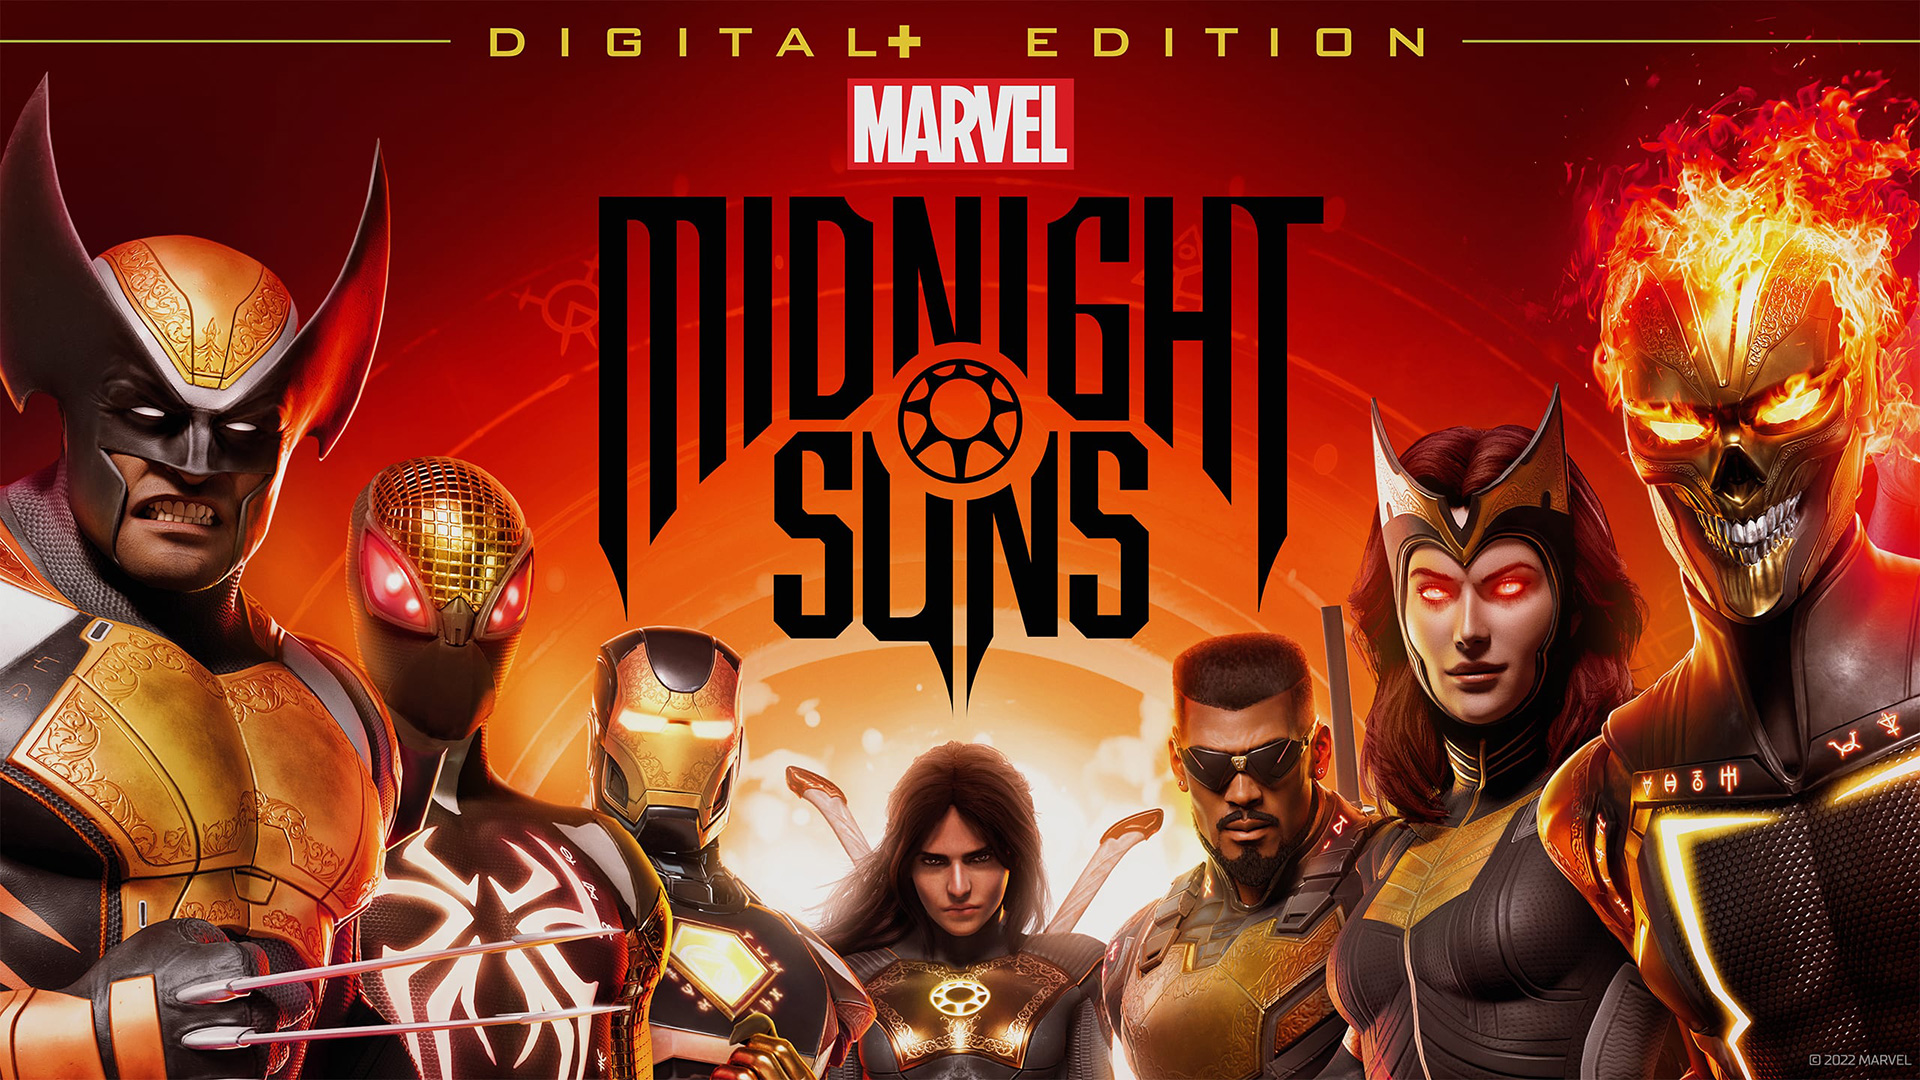 Crazy Joystick - Marvel's Midnight Suns Digital+ Edition